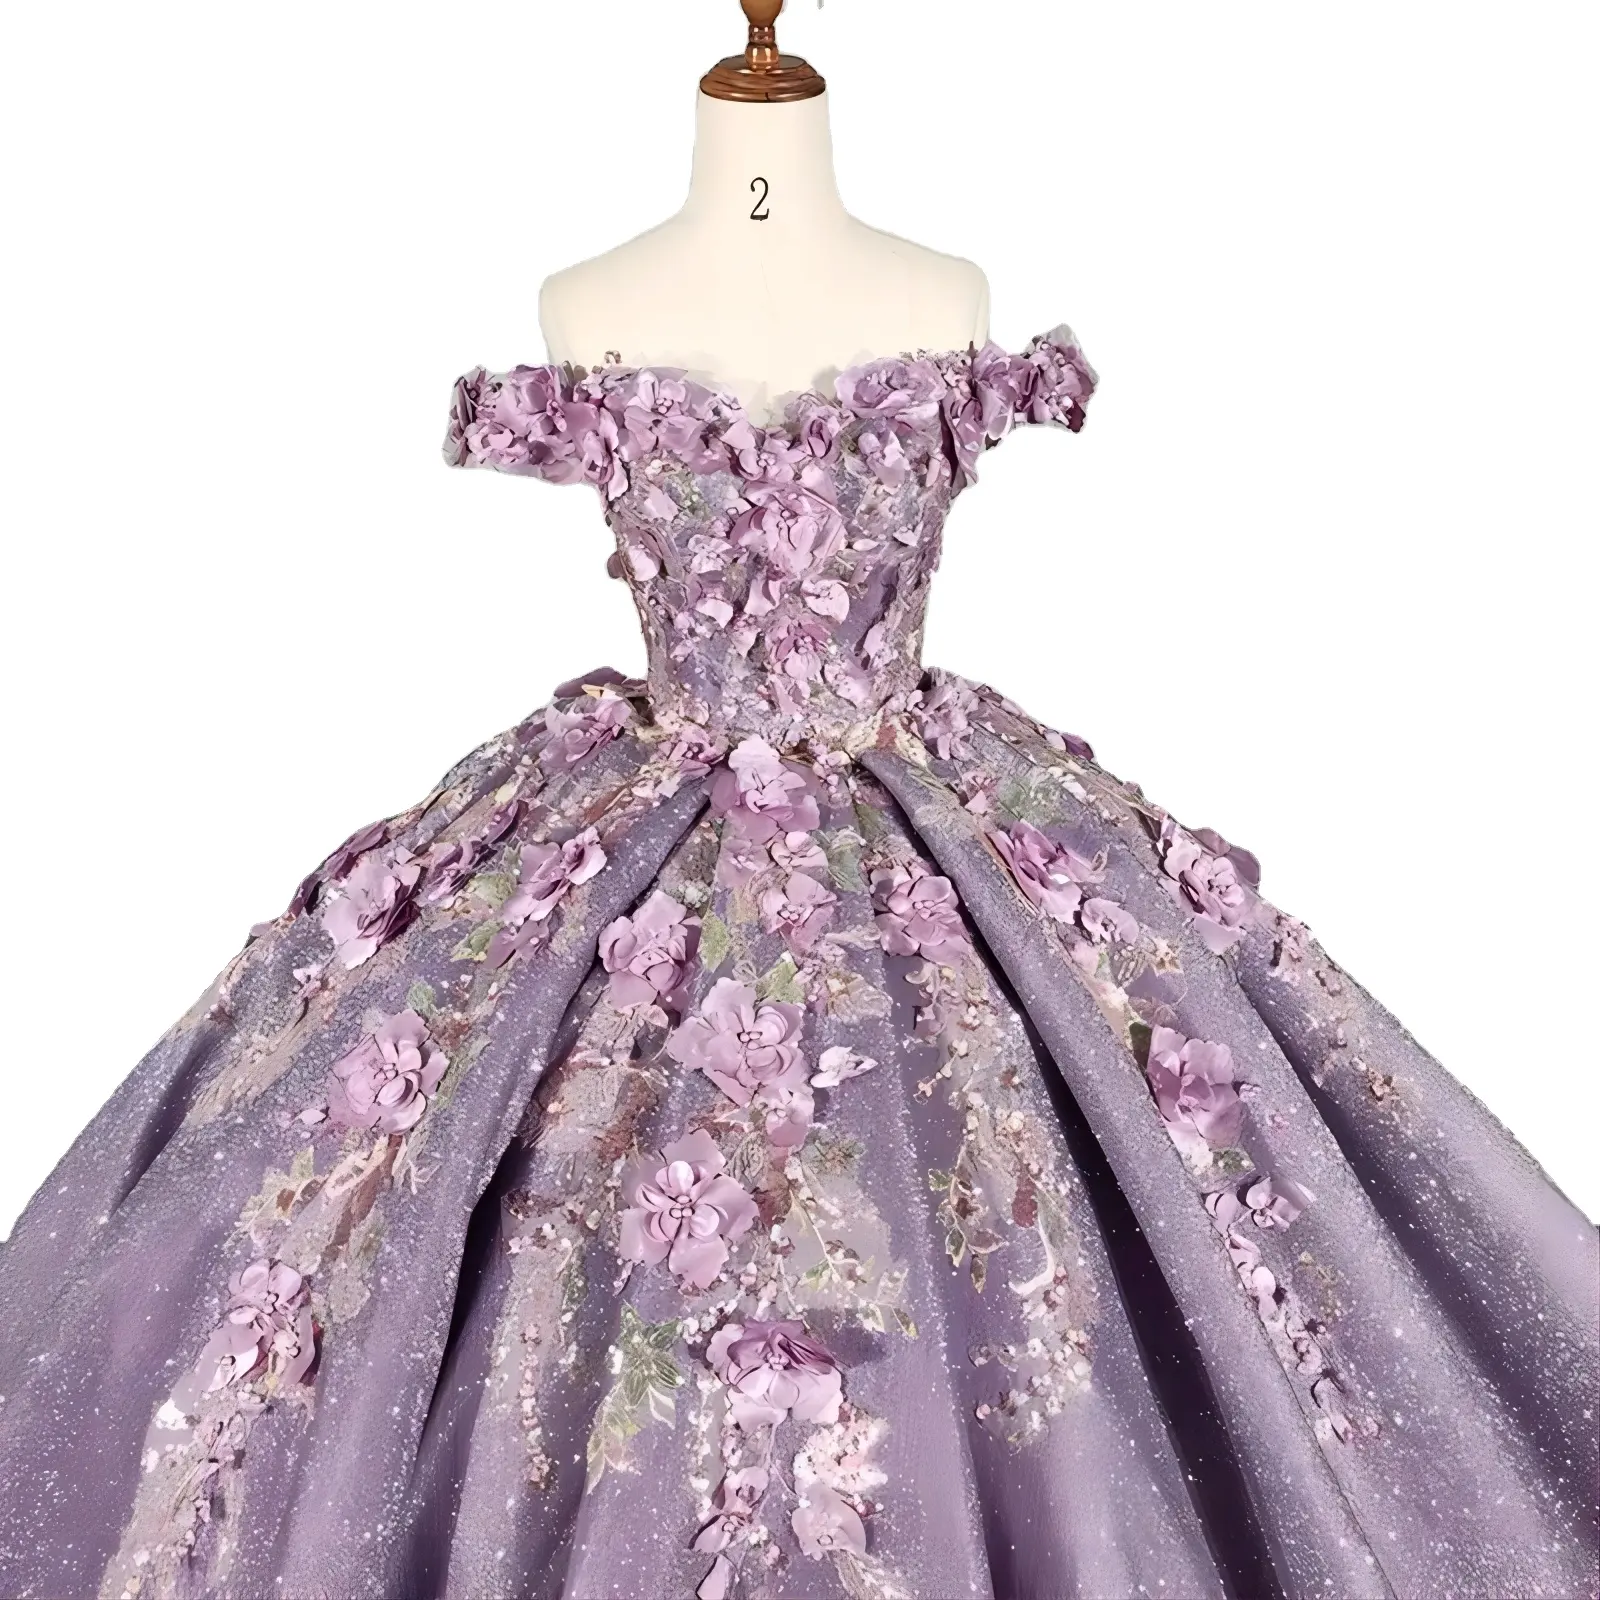 प्रीमियम कस्टम शाम पोशाक लक्जरी महिला औपचारिक लंबी शाम पोशाक पार्टी राजकुमारी ड्रेस